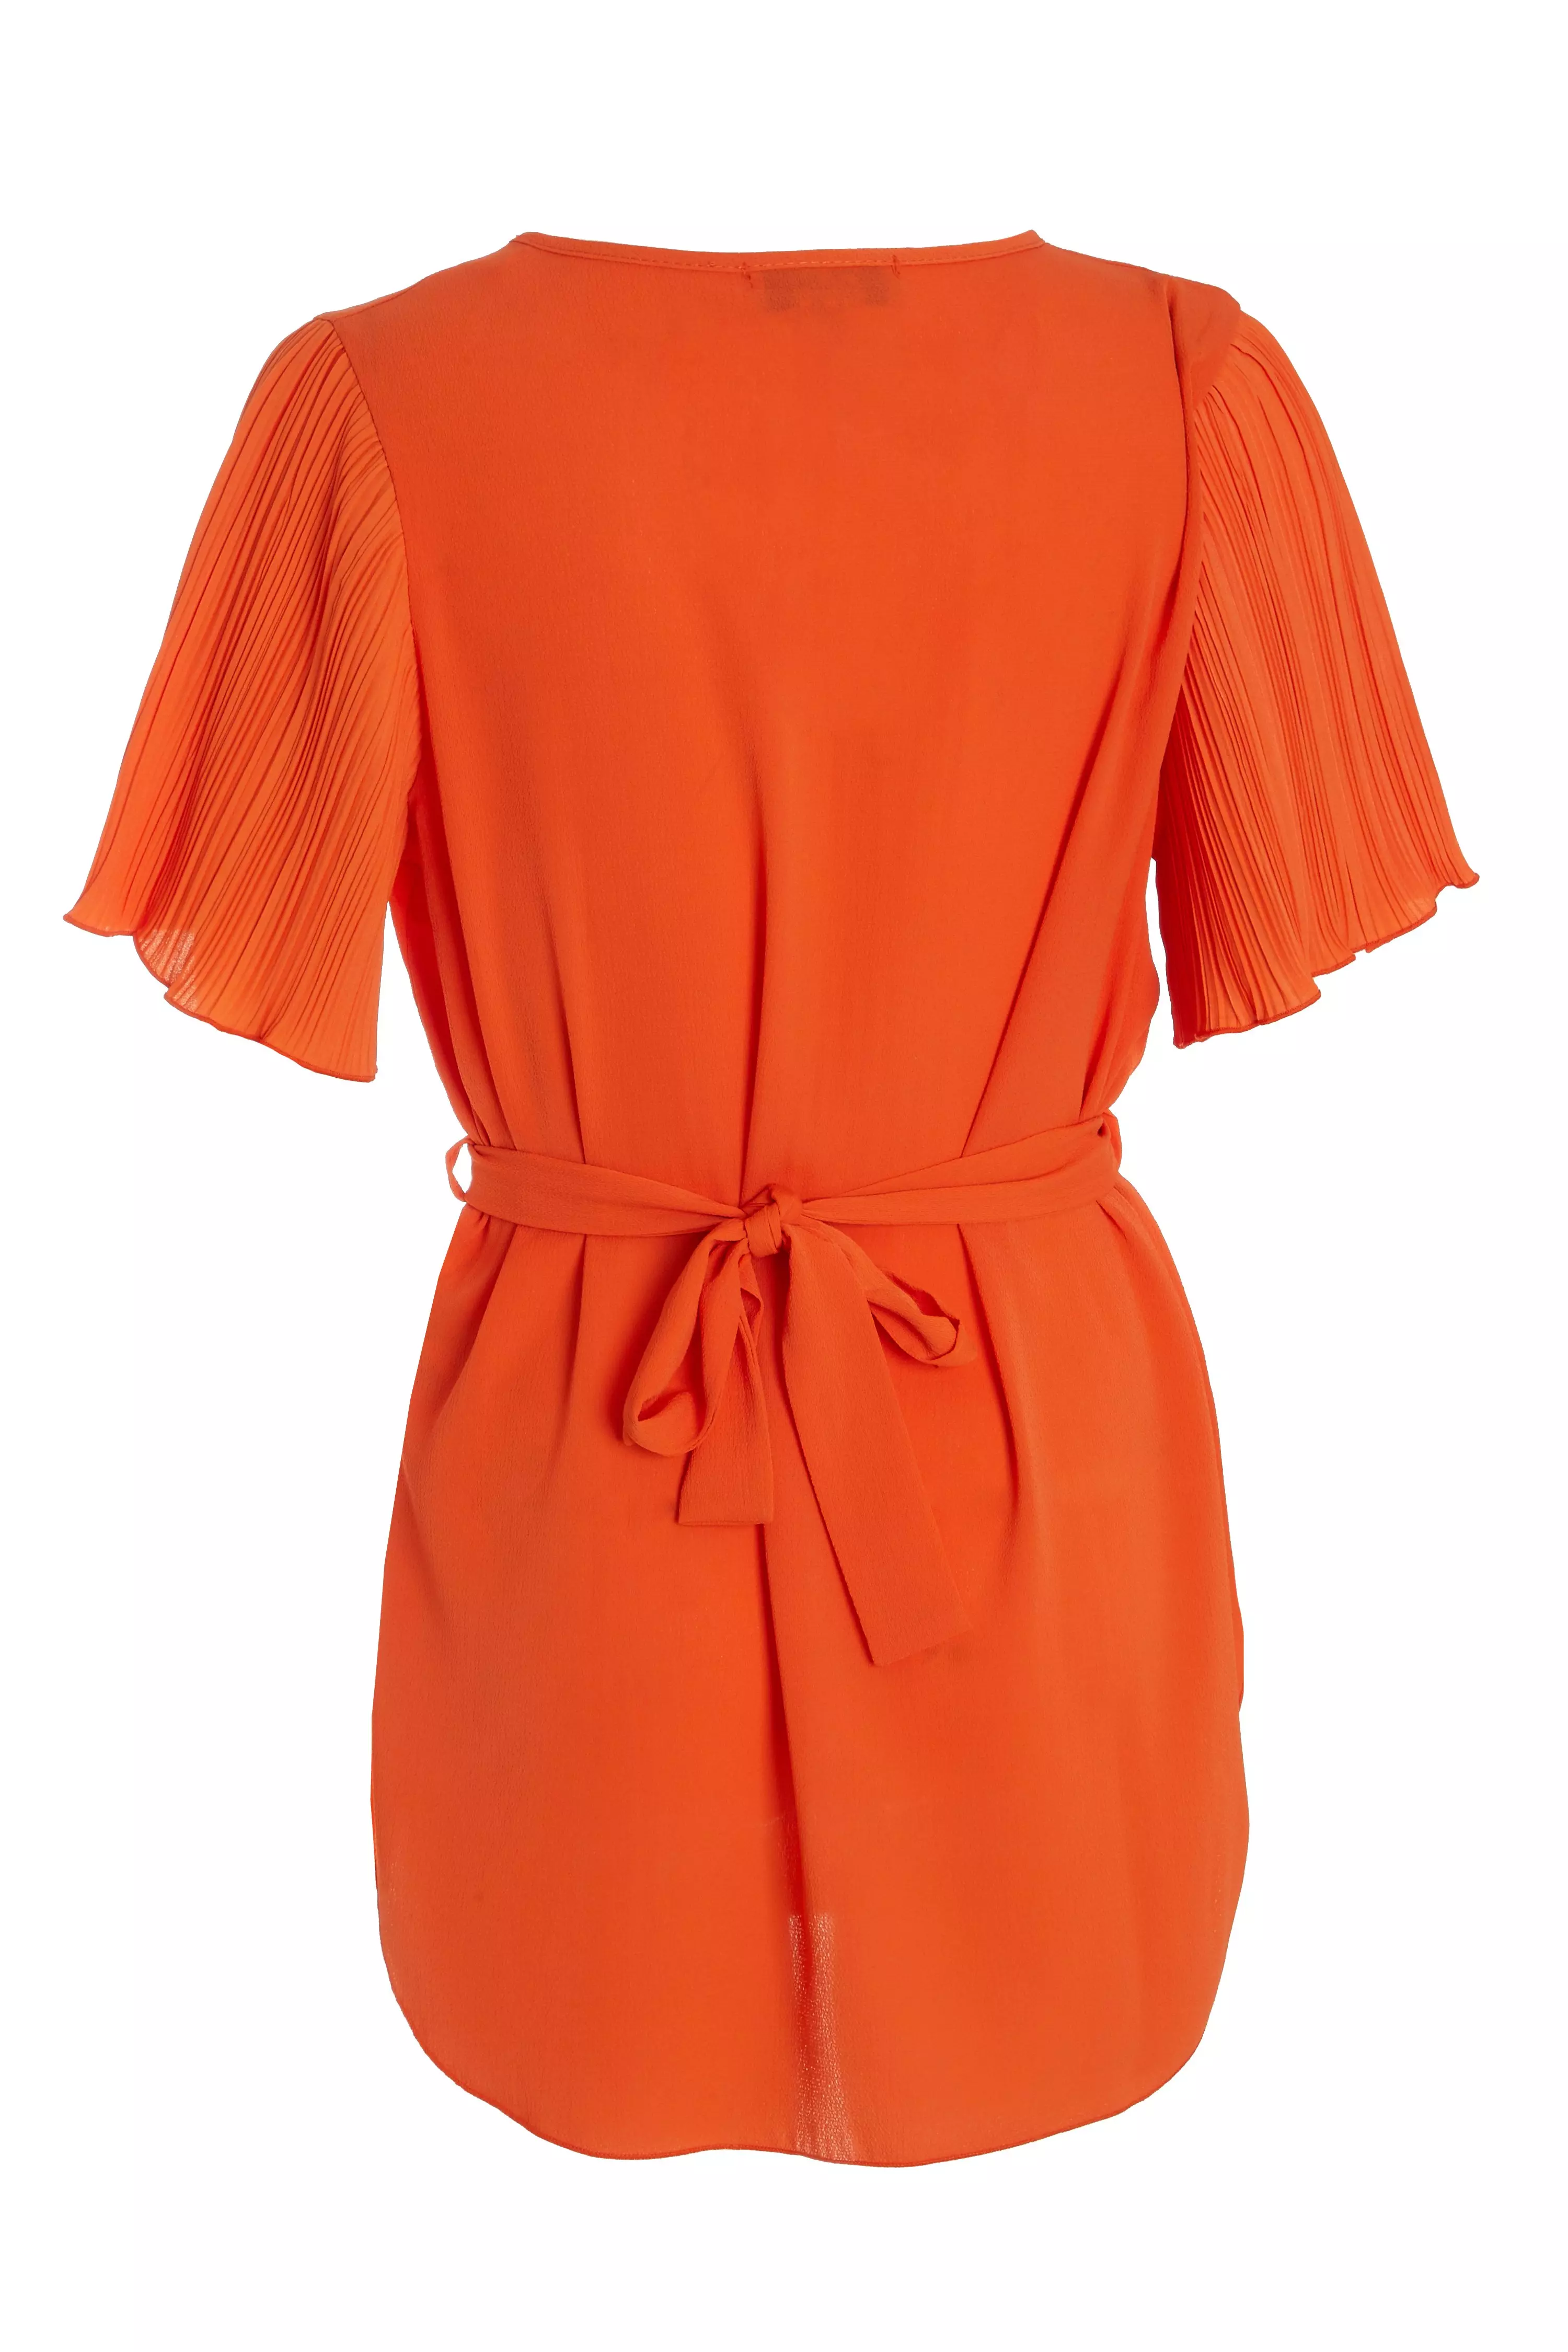 Orange Pleat Sleeve Top - QUIZ Clothing